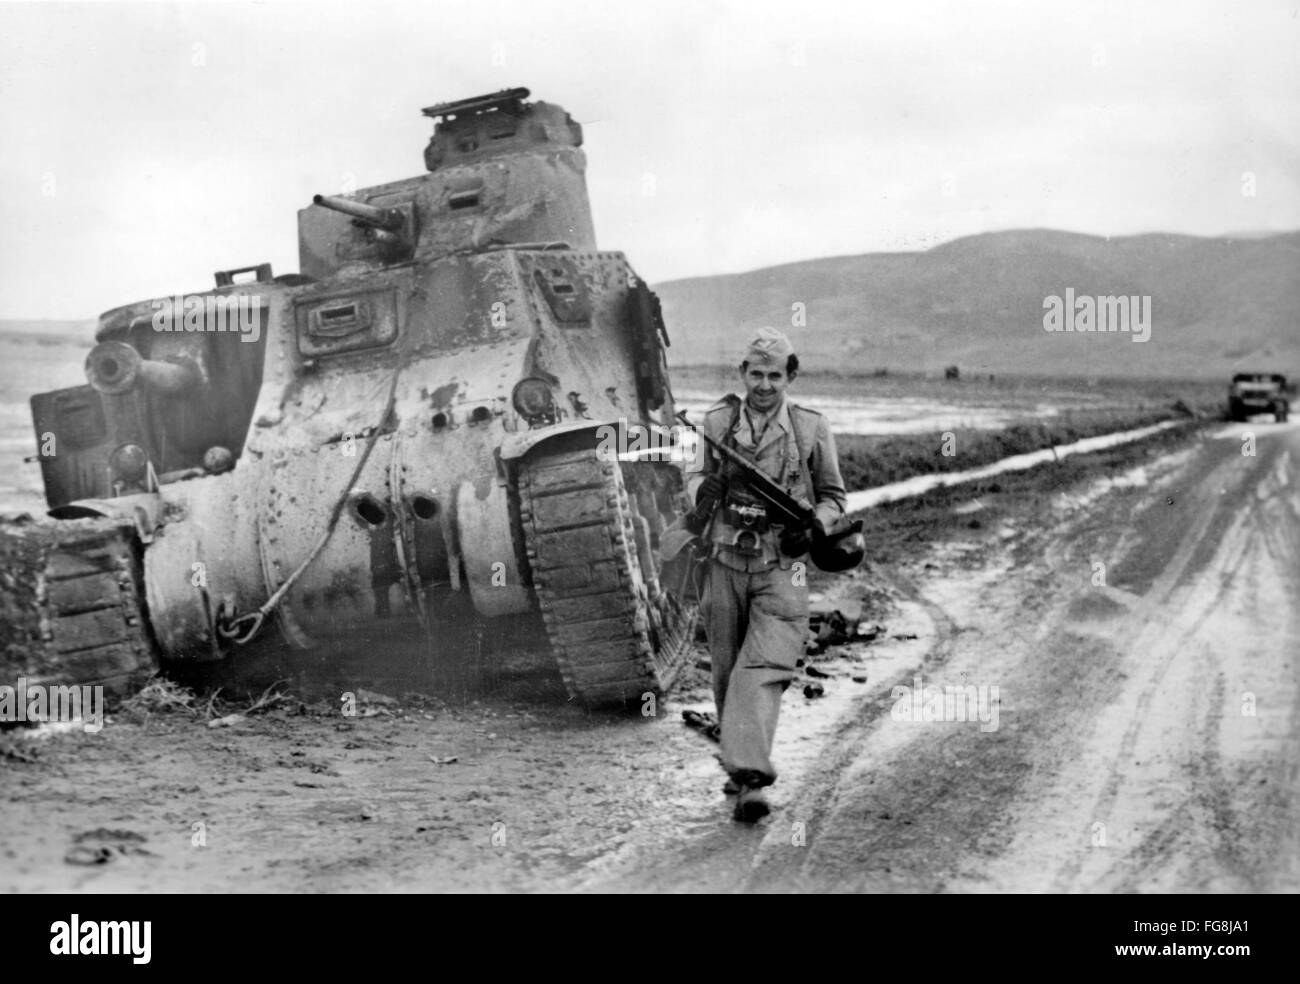 Das Nazi-Propagandafild zeigt ein Mitglied der deutschen Wehrmacht mit einem Maschinengewehr vor einem zerstörten US-Panzer in Tunesien. Das Foto wurde im Dezember 1942 aufgenommen. Fotoarchiv für Zeitgeschichtee - KEINE ÜBERWEISUNG - Stockfoto